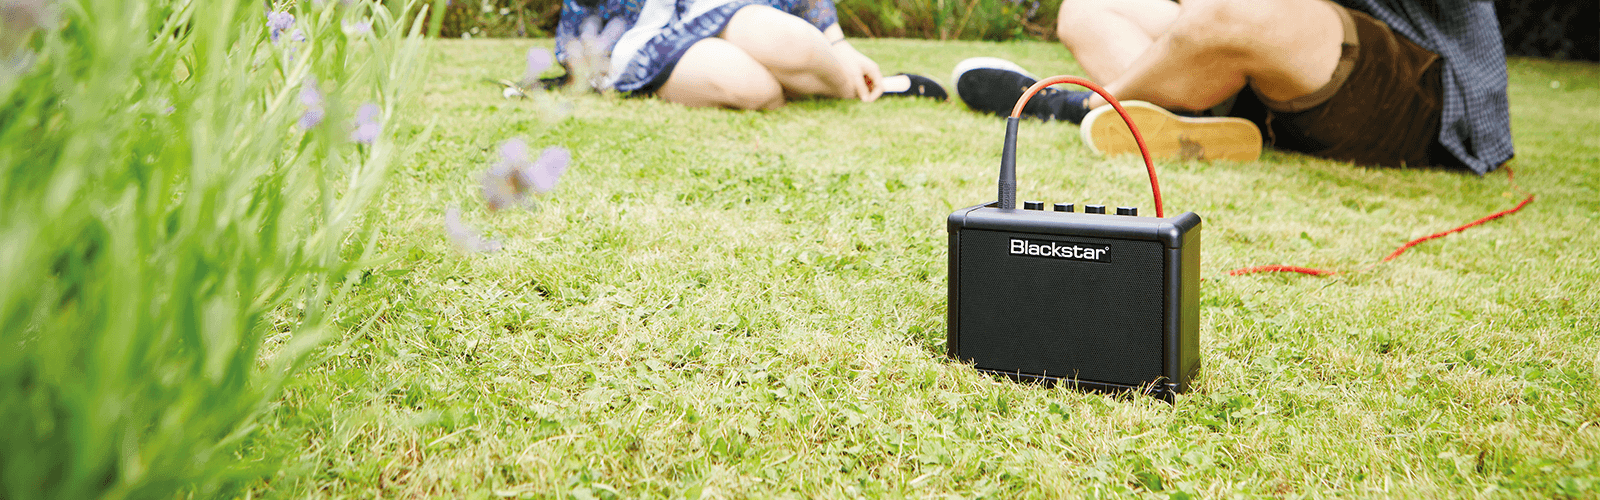 คุณภาพเสียงของแอมป์กีต้าร์ที่เกินตัว lifestyle image of Blackstar FLY in grass